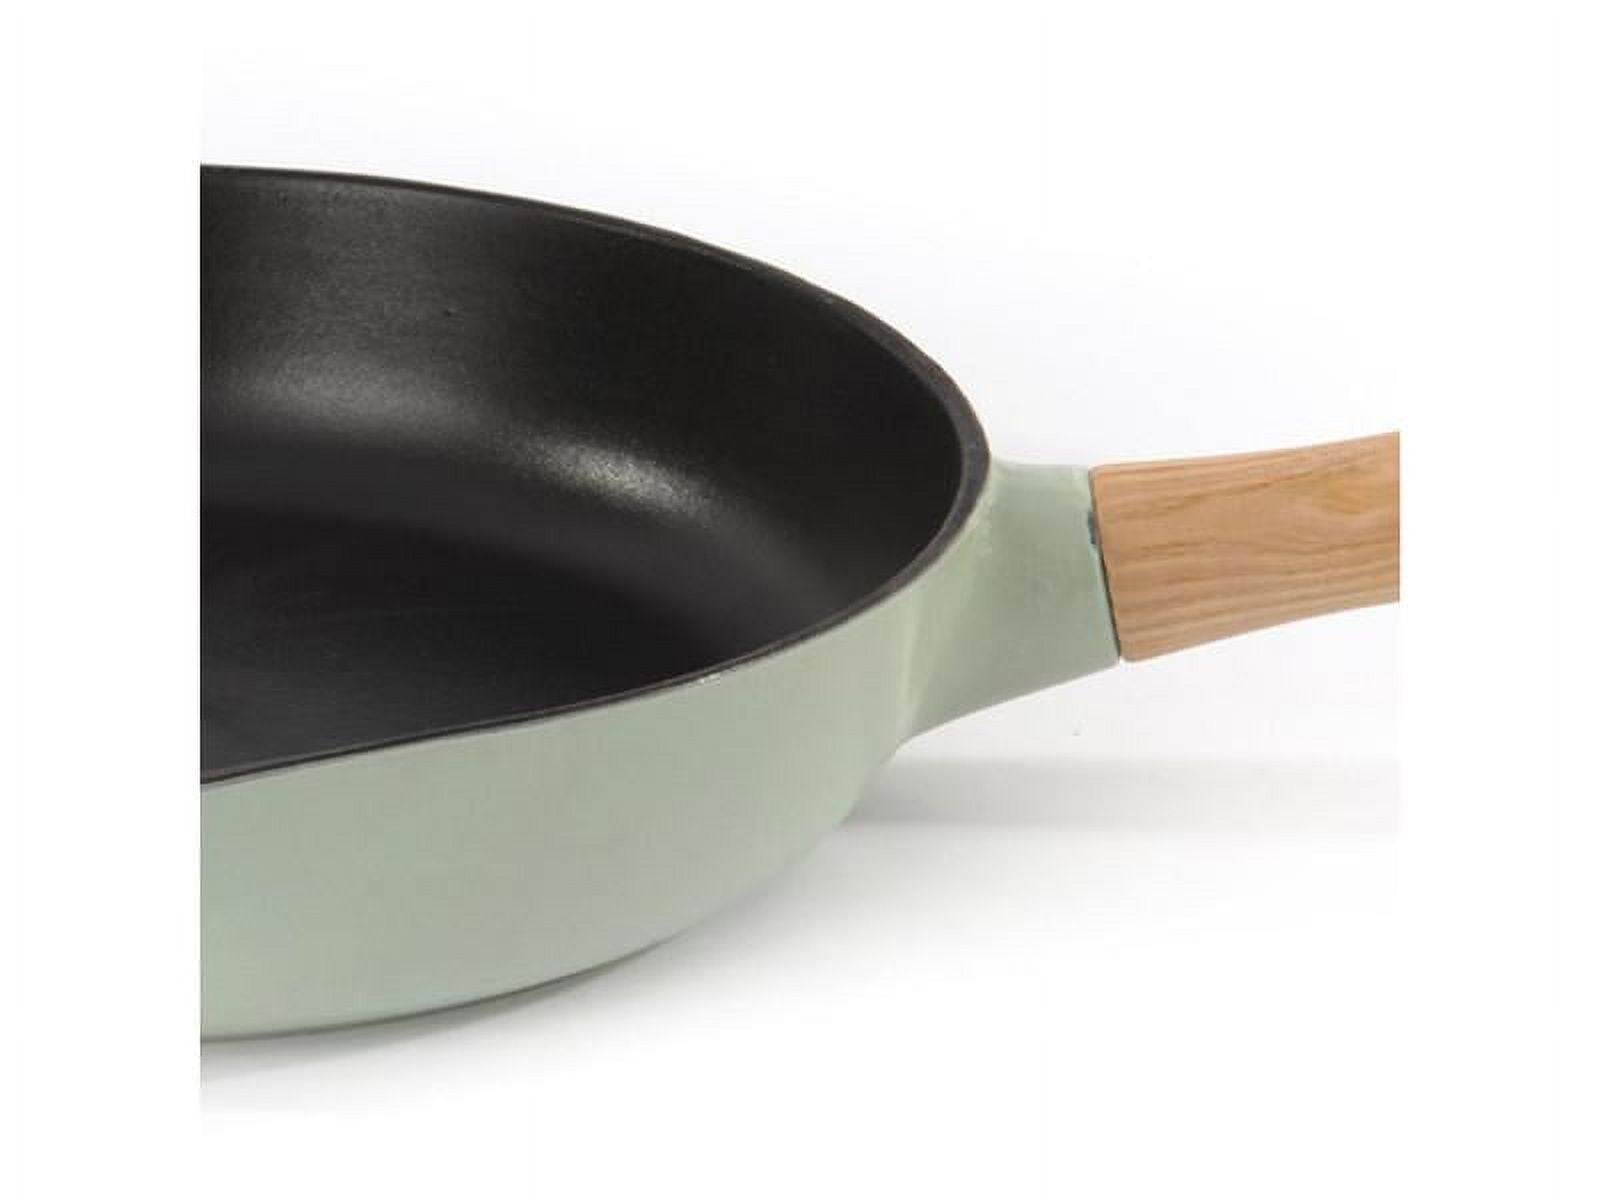 9x13 Nonstick Cast Iron Pan with Pour Spout